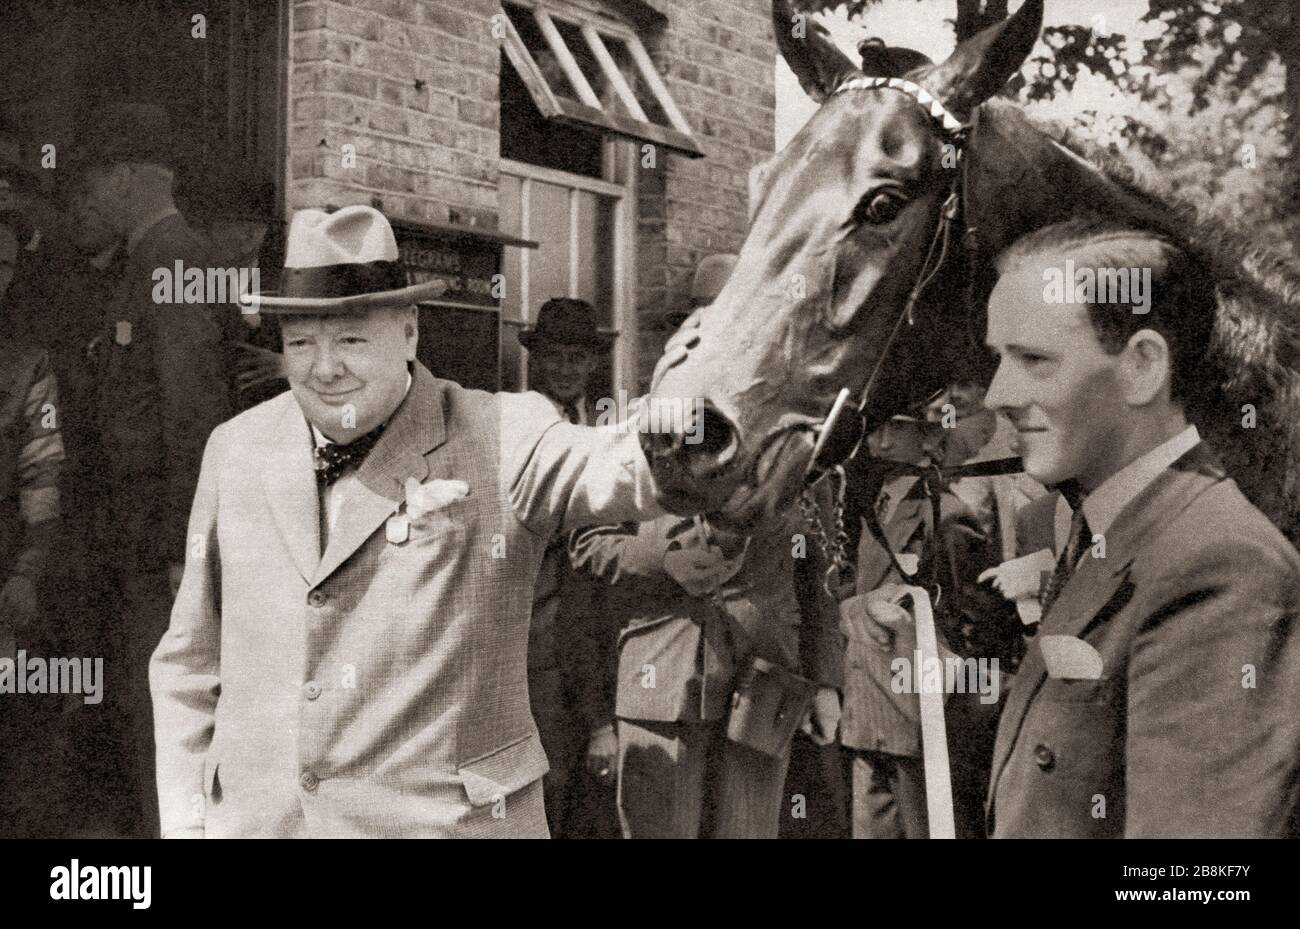 Winston Churchill, vu ici avec son cheval de course Canyon Kid à Windsor en 1950. Sir Winston Leonard Spencer-Churchill, 1874 – 1965. Homme politique britannique, officier de l'armée, écrivain et deux fois premier ministre du Royaume-Uni. Banque D'Images